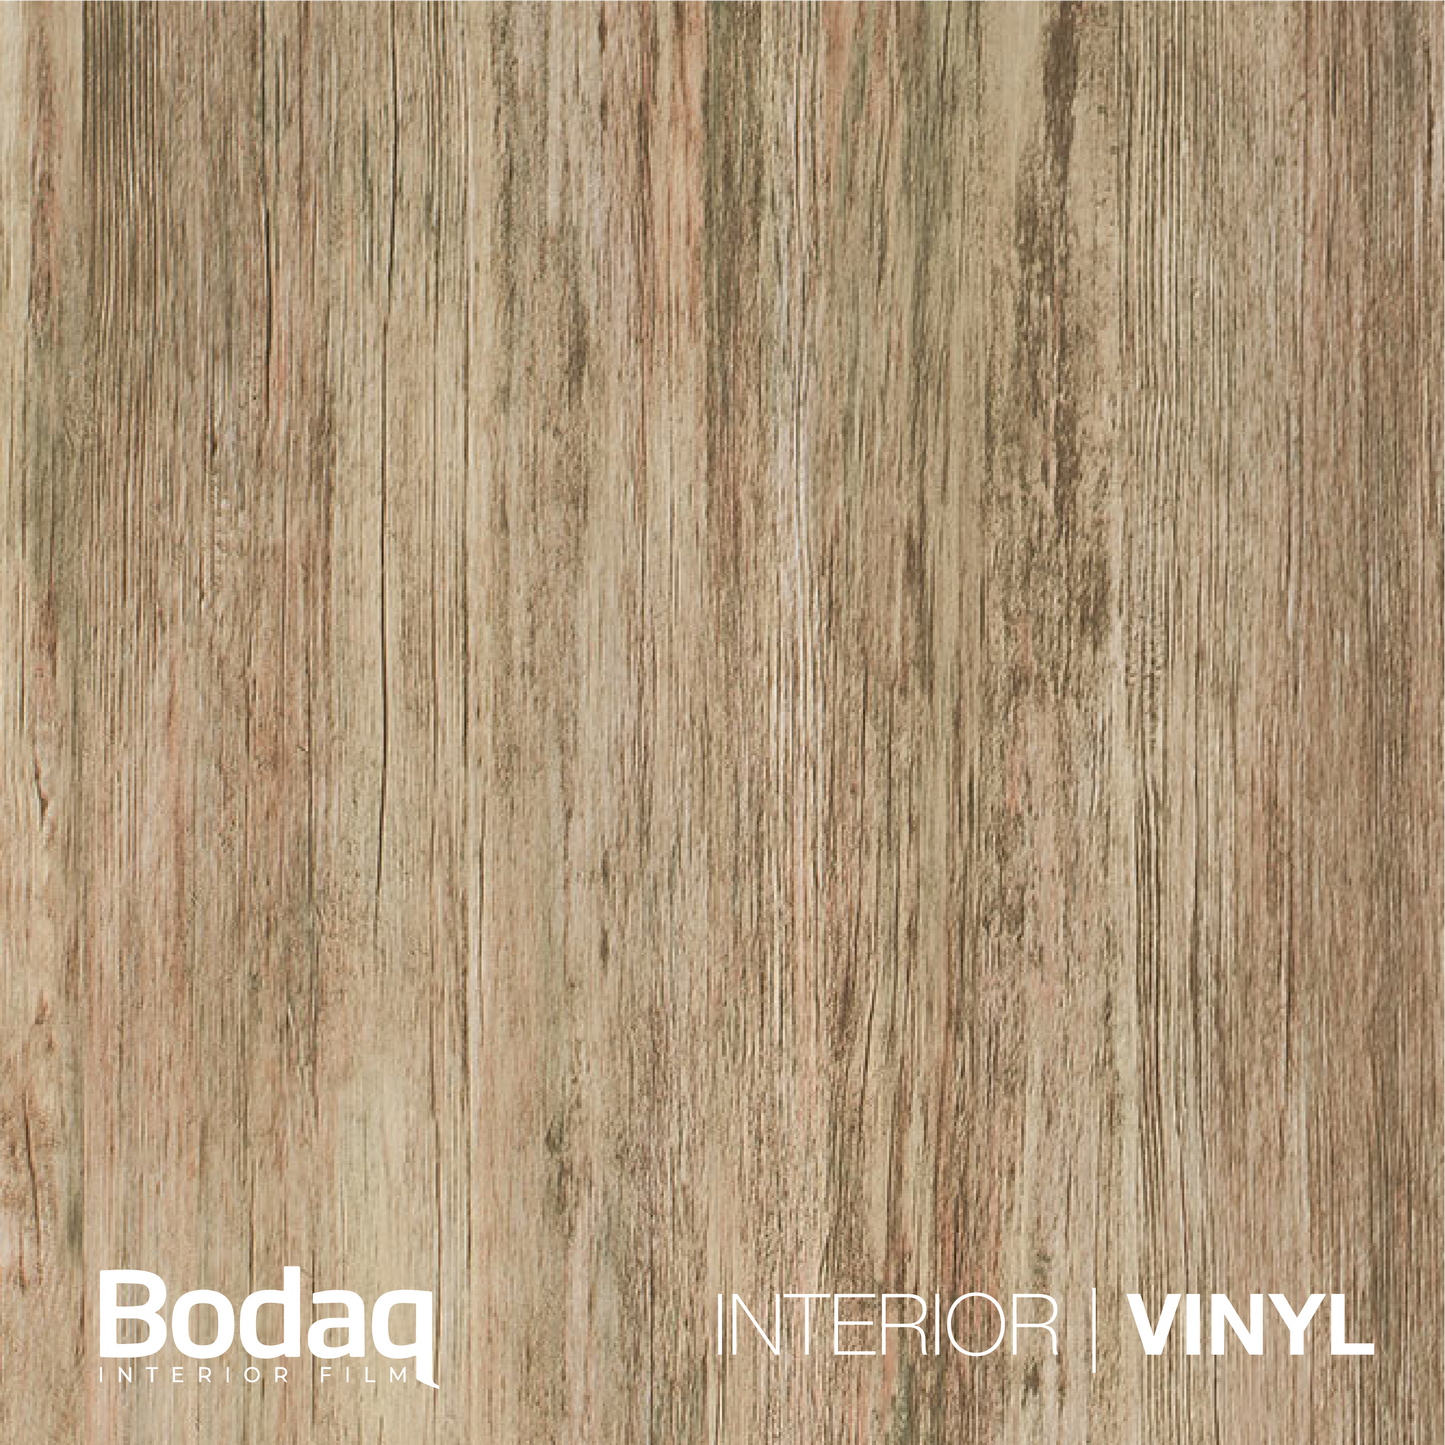 BODAQ Interior Film W278 Standard Wood - A5 Sample